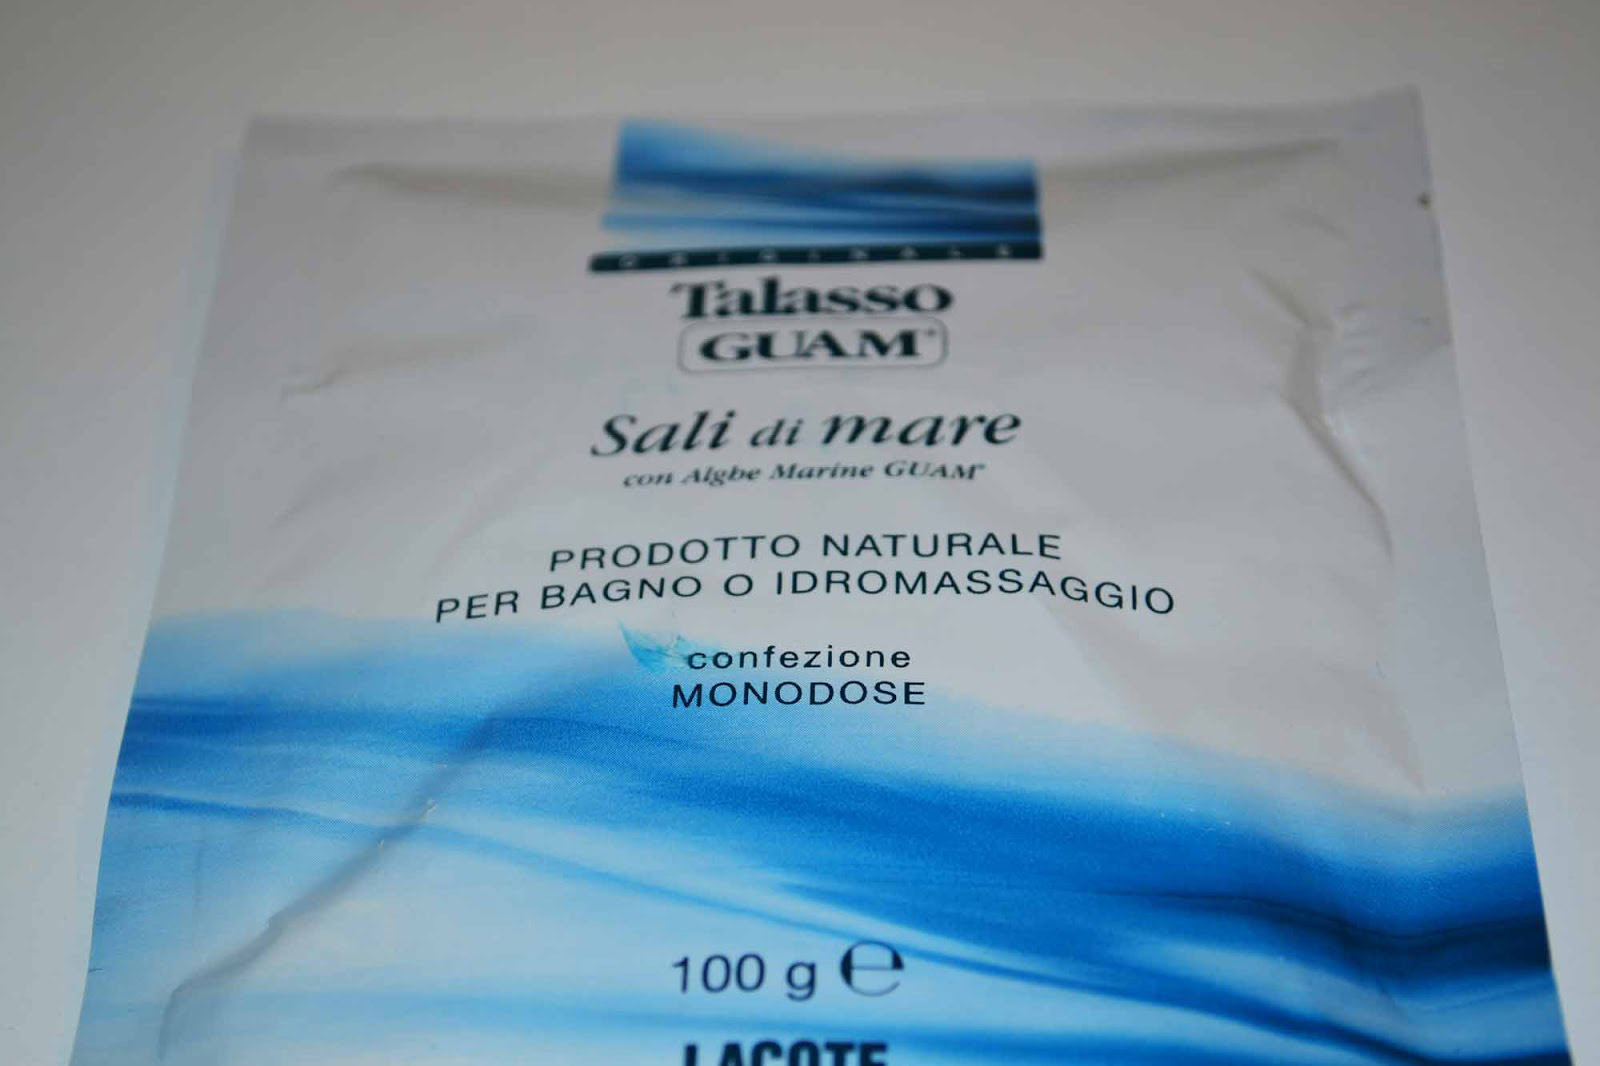 И балдеем, и худеем: морская соль Talasso Guam – копия